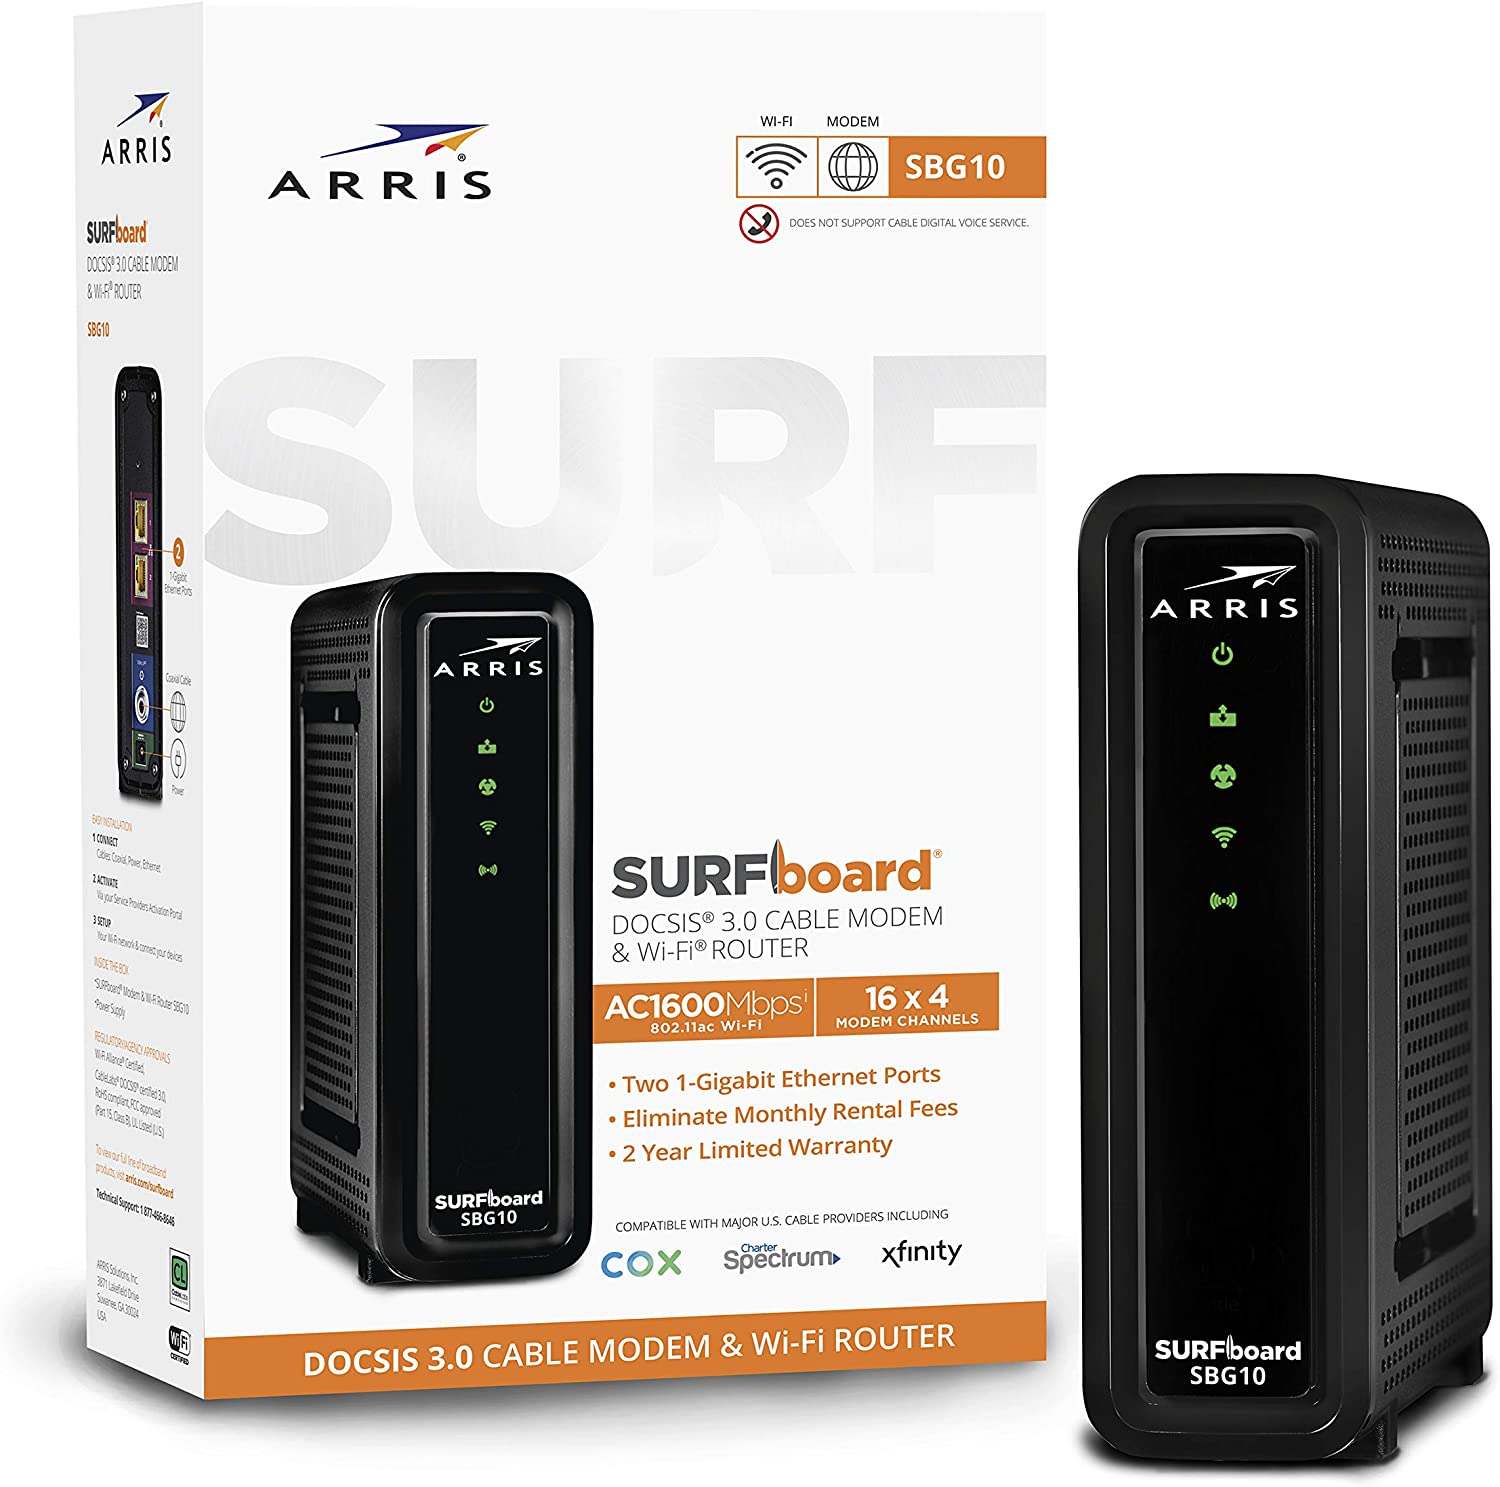 ARRIS SURFboard 3-In-1 Internet Wireless Router